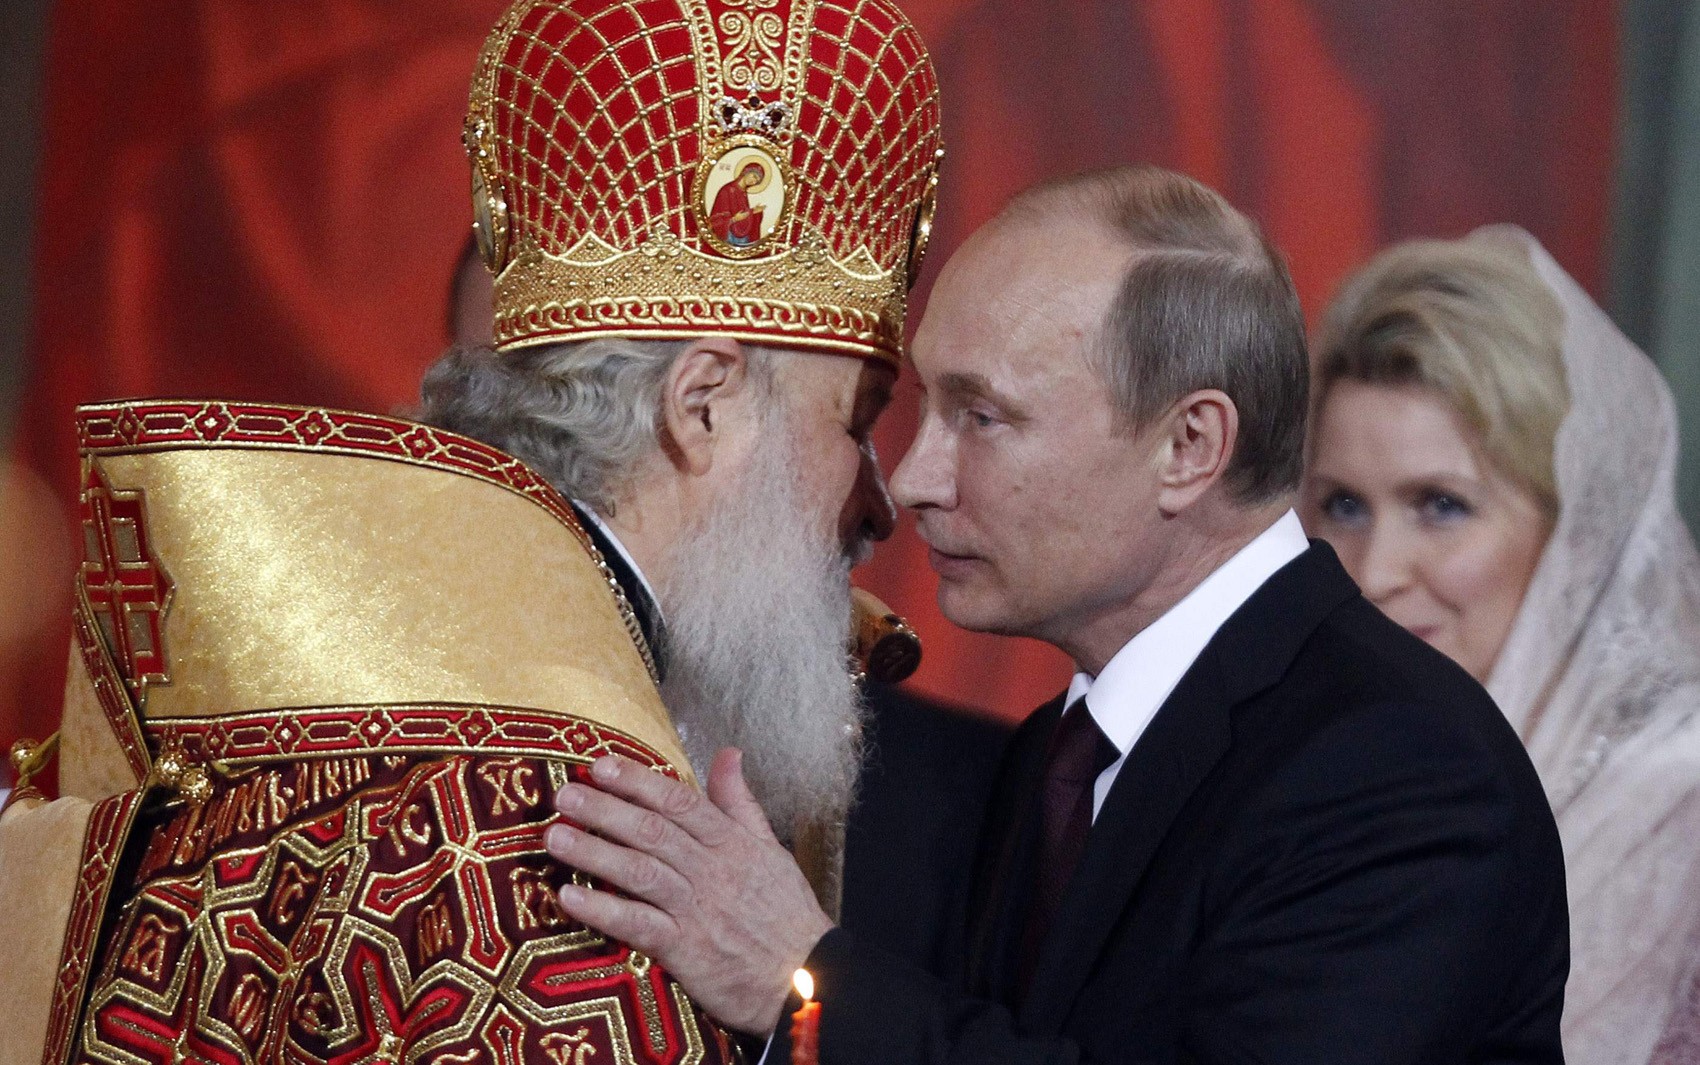 'Deus colocou você no poder', diz líder ortodoxo russo a Putin no aniversário de 70 anos do presidente russo